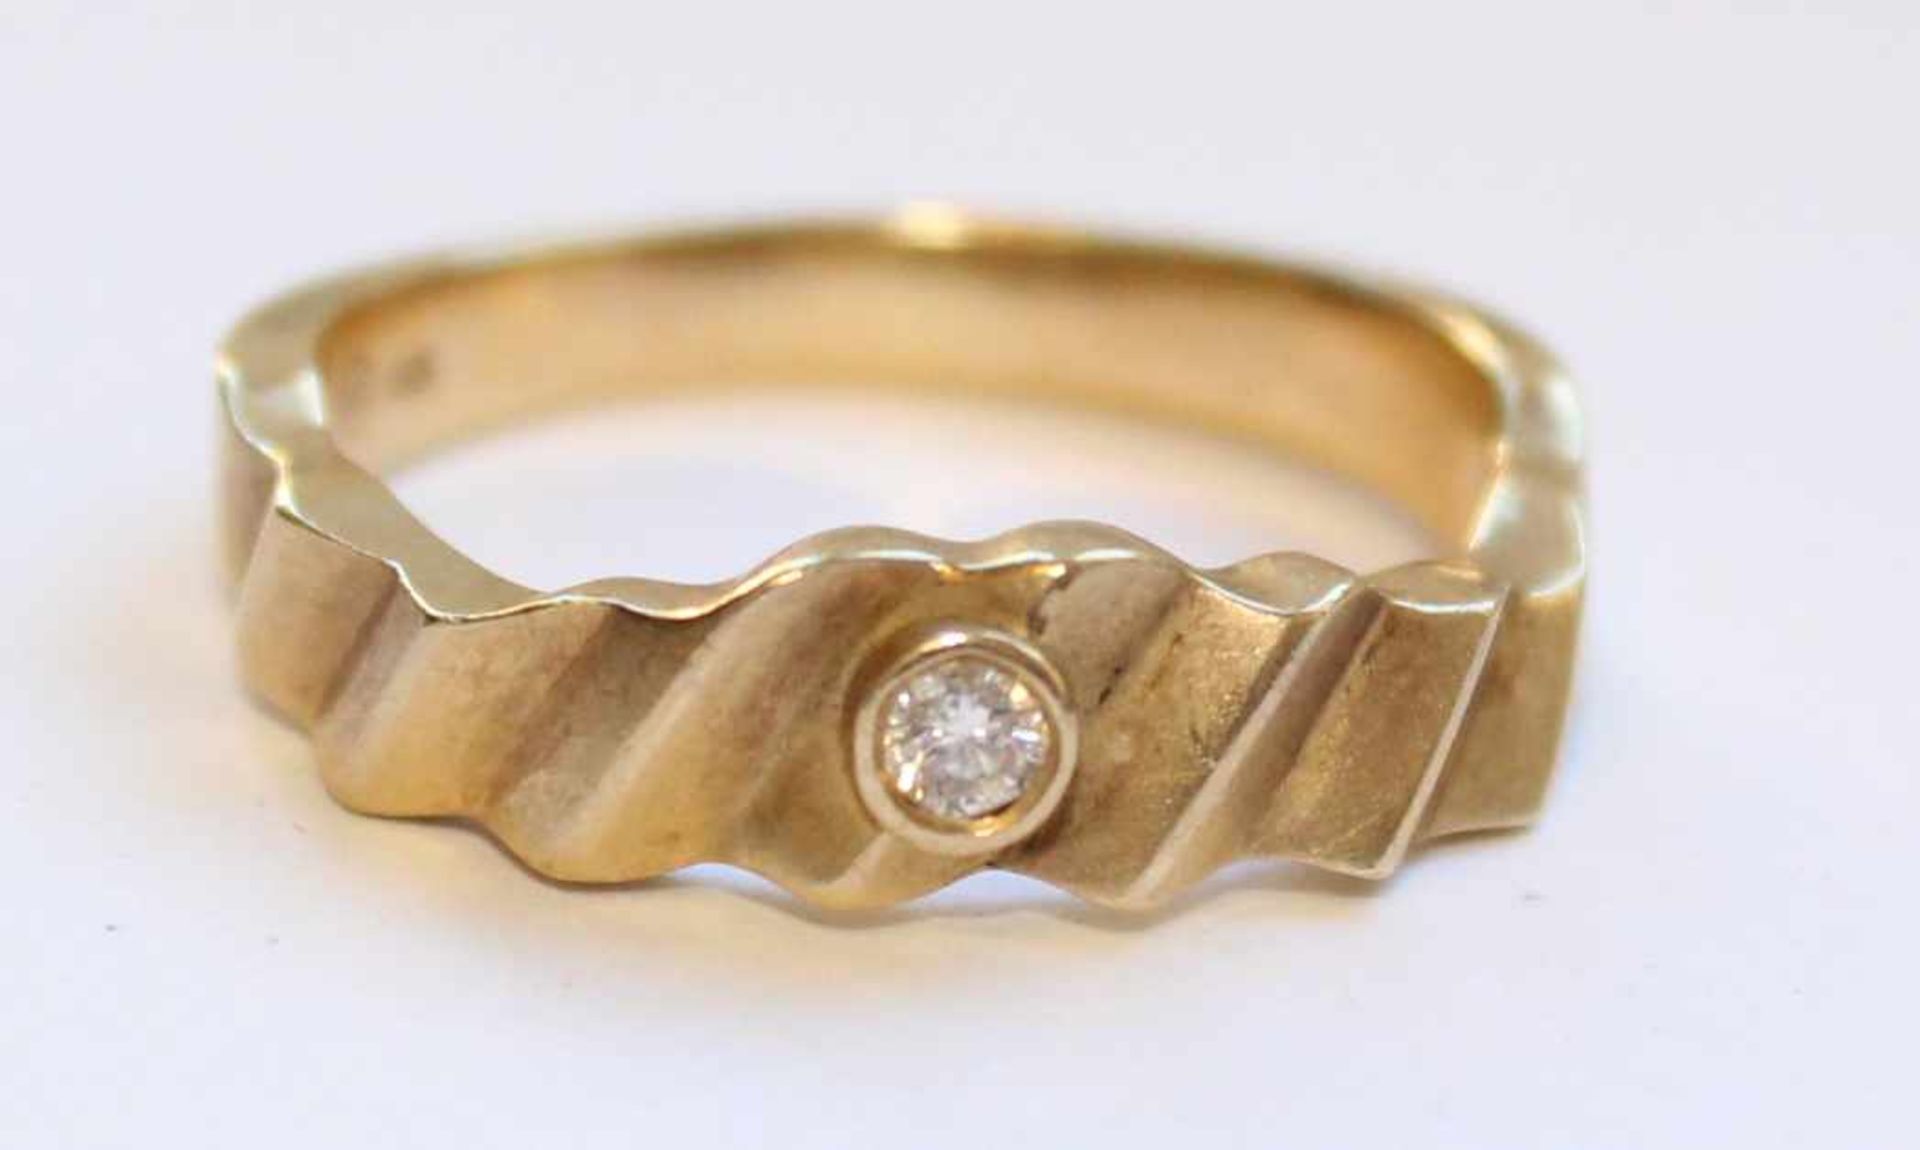 Ring, Gelb- Gold 585. Mit einem Solitär Diamant Brillant circa 0,08 ct. 3,7 Gramm gesamt. Der